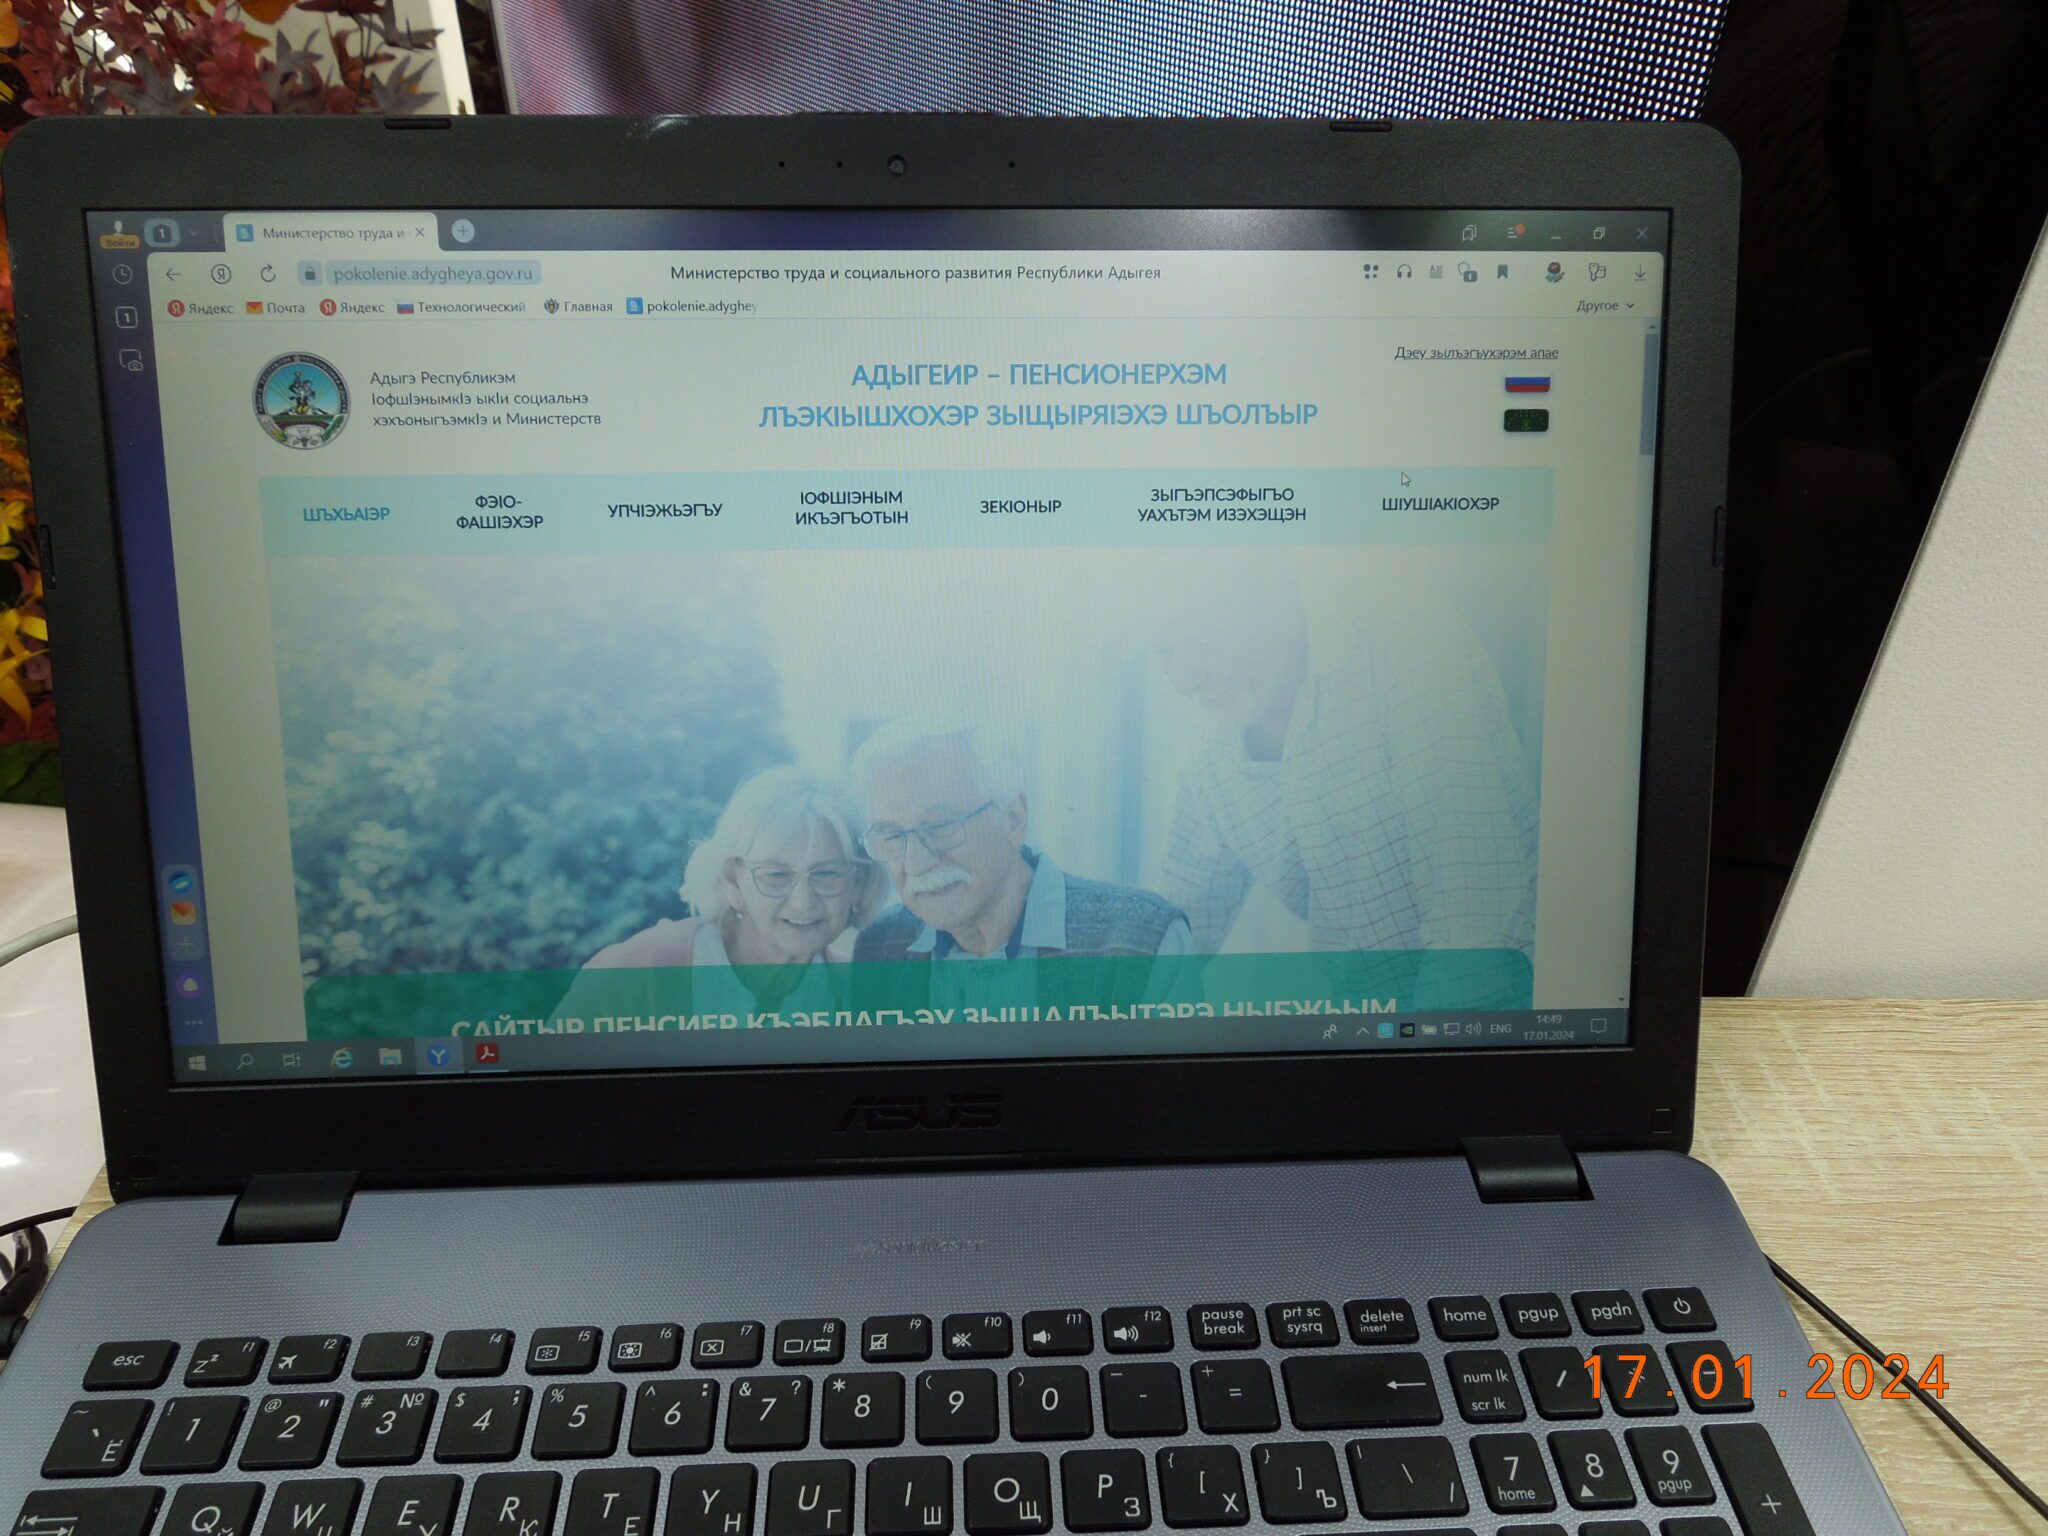 Адыгея – прототип сайта с подробным описанием о положенных пенсионерам и предпенсионерам льготах, в том числе на адыгейском языке